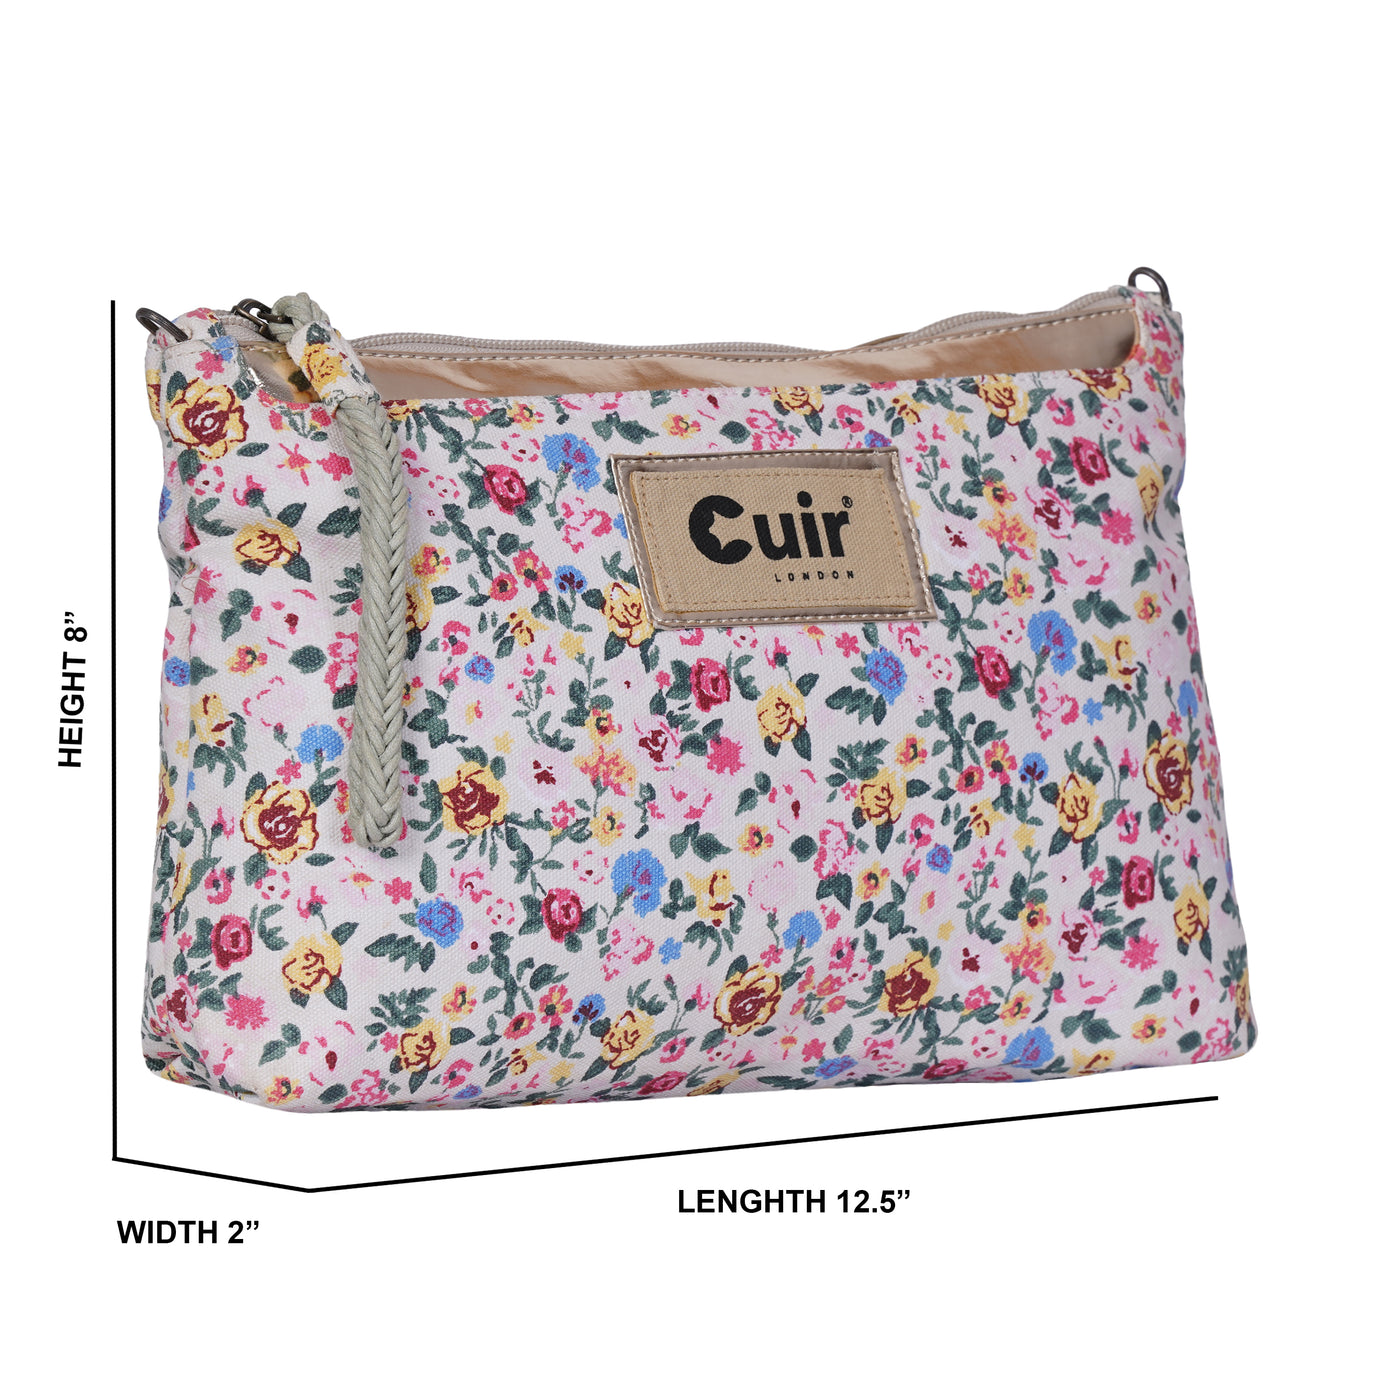 Flower clutch bag